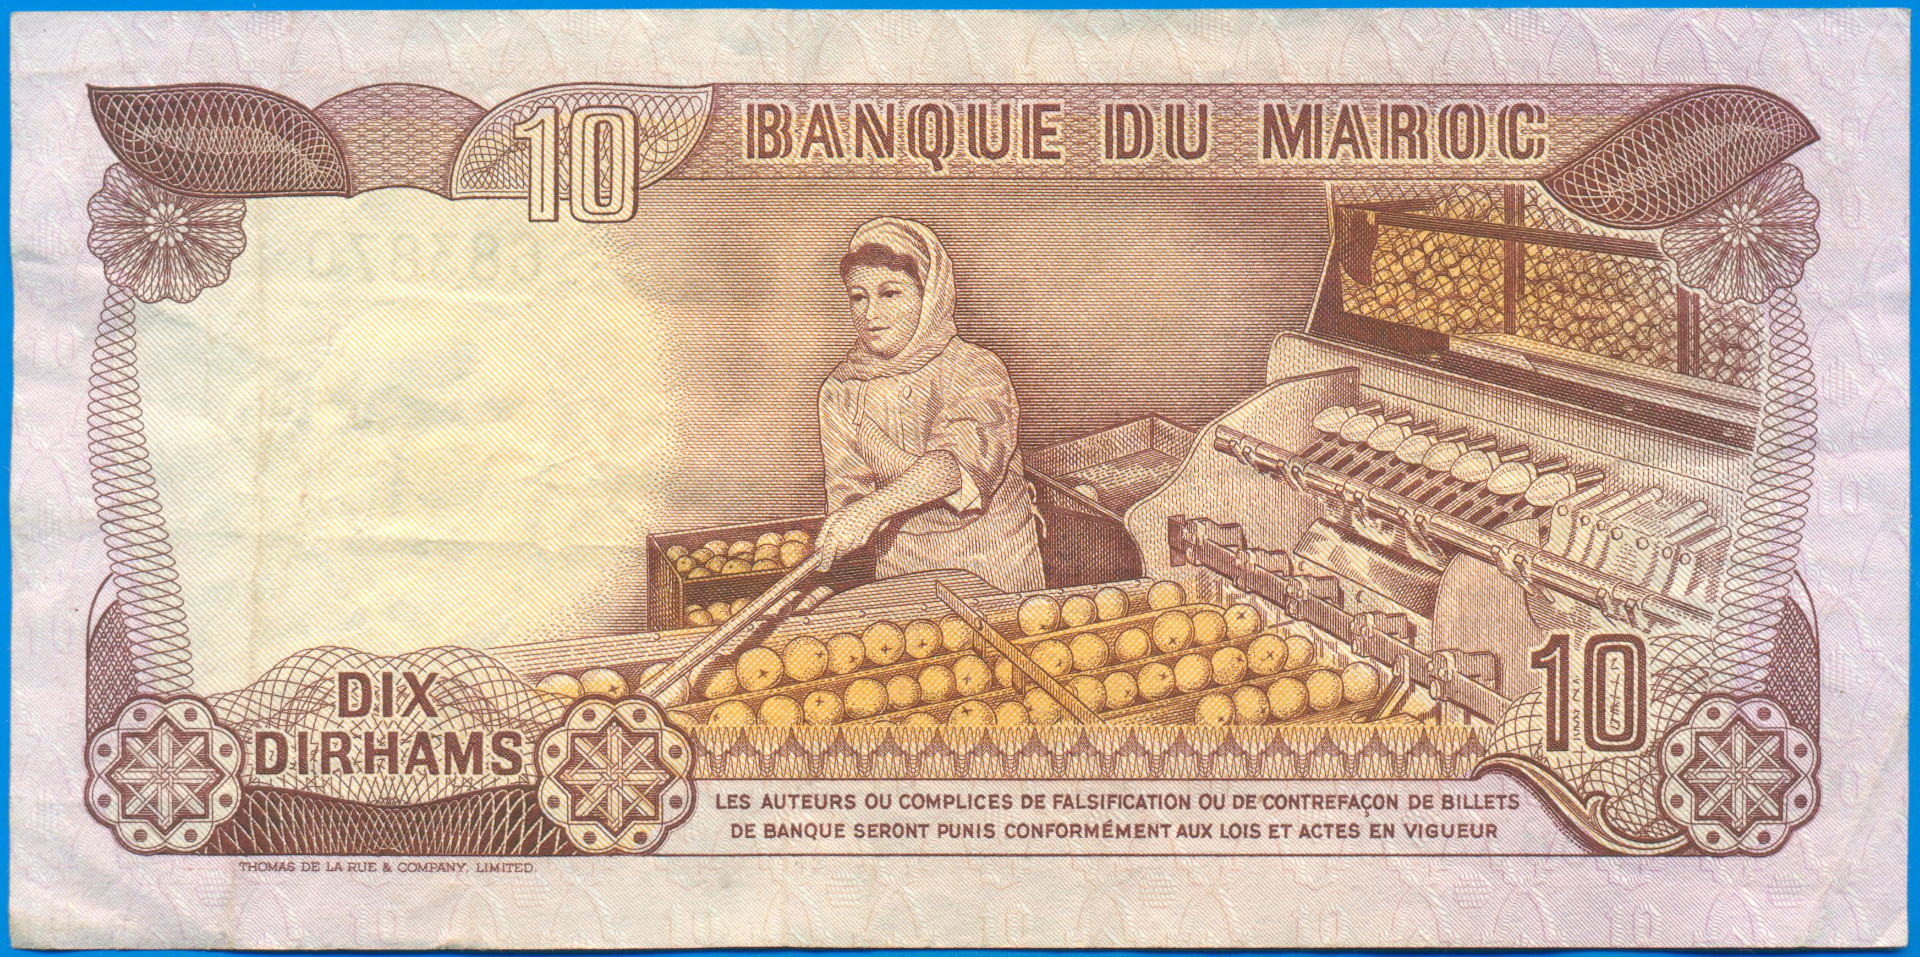 500000 дирхам. Денежные знаки Марокко. 10 Марокко банкнота. Боны Марокко. 10 Дирхам Марокко.